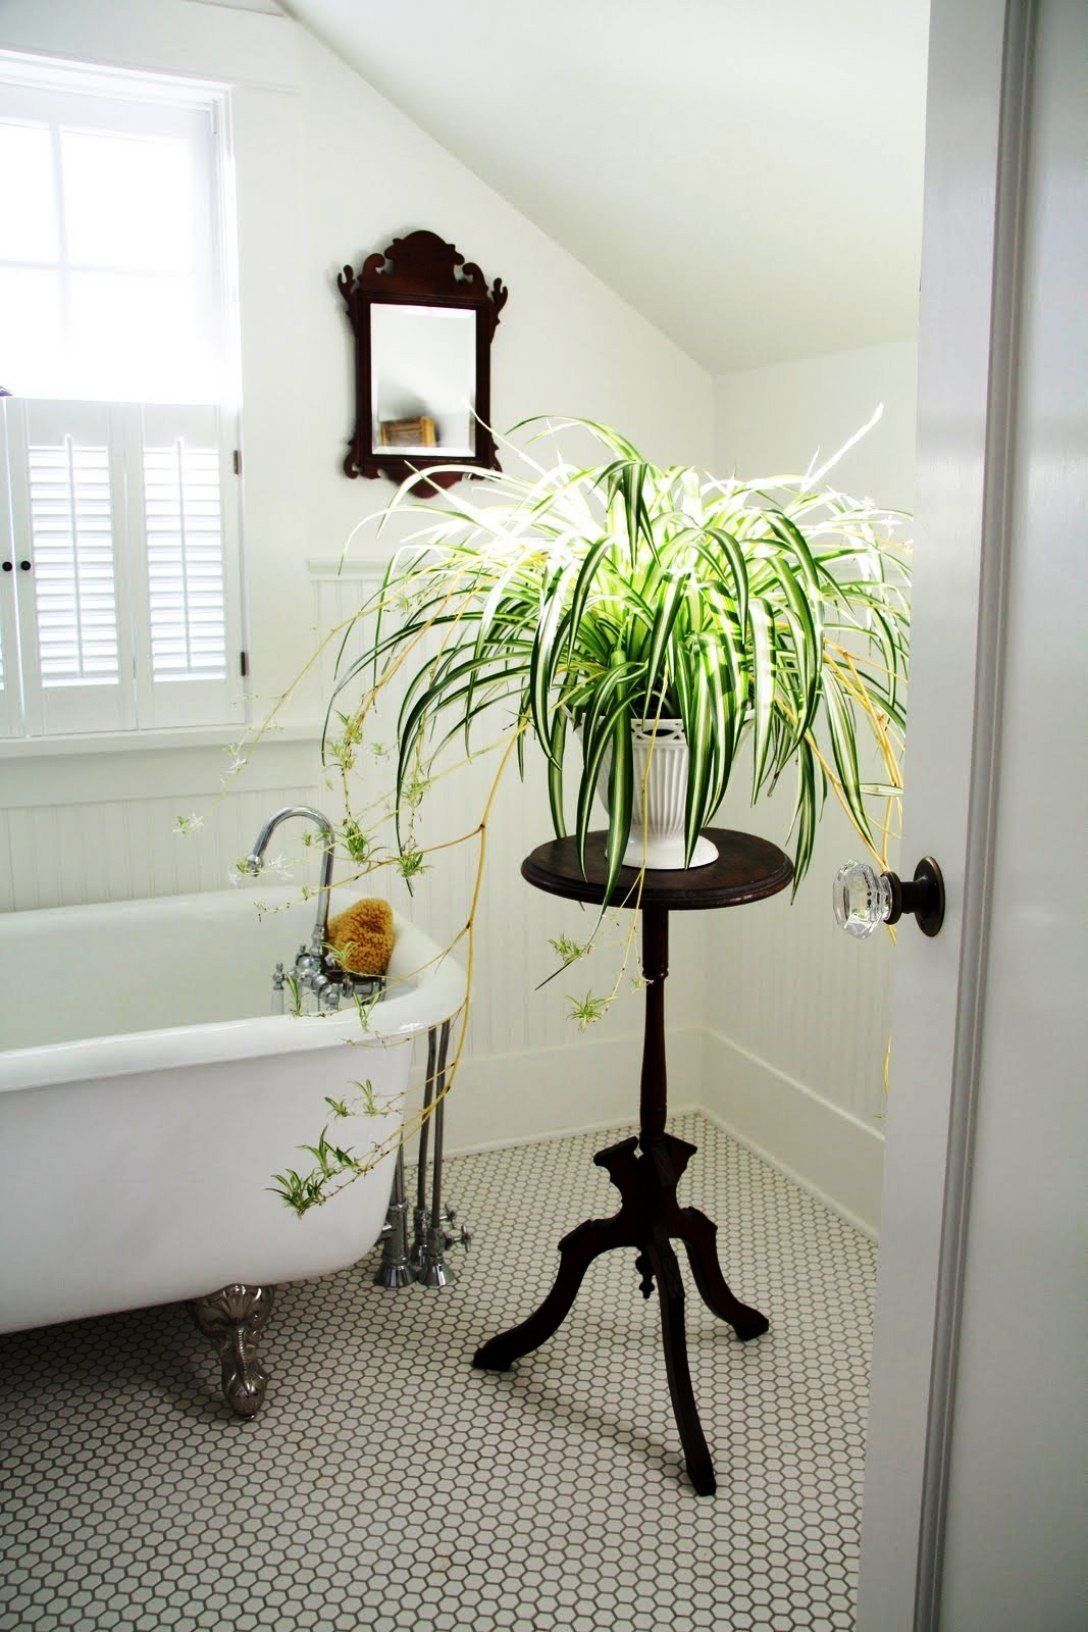 Bạn có thể trồng cây dây nhện trong chậu hoặc giỏ treo để trang trí phòng tắm.